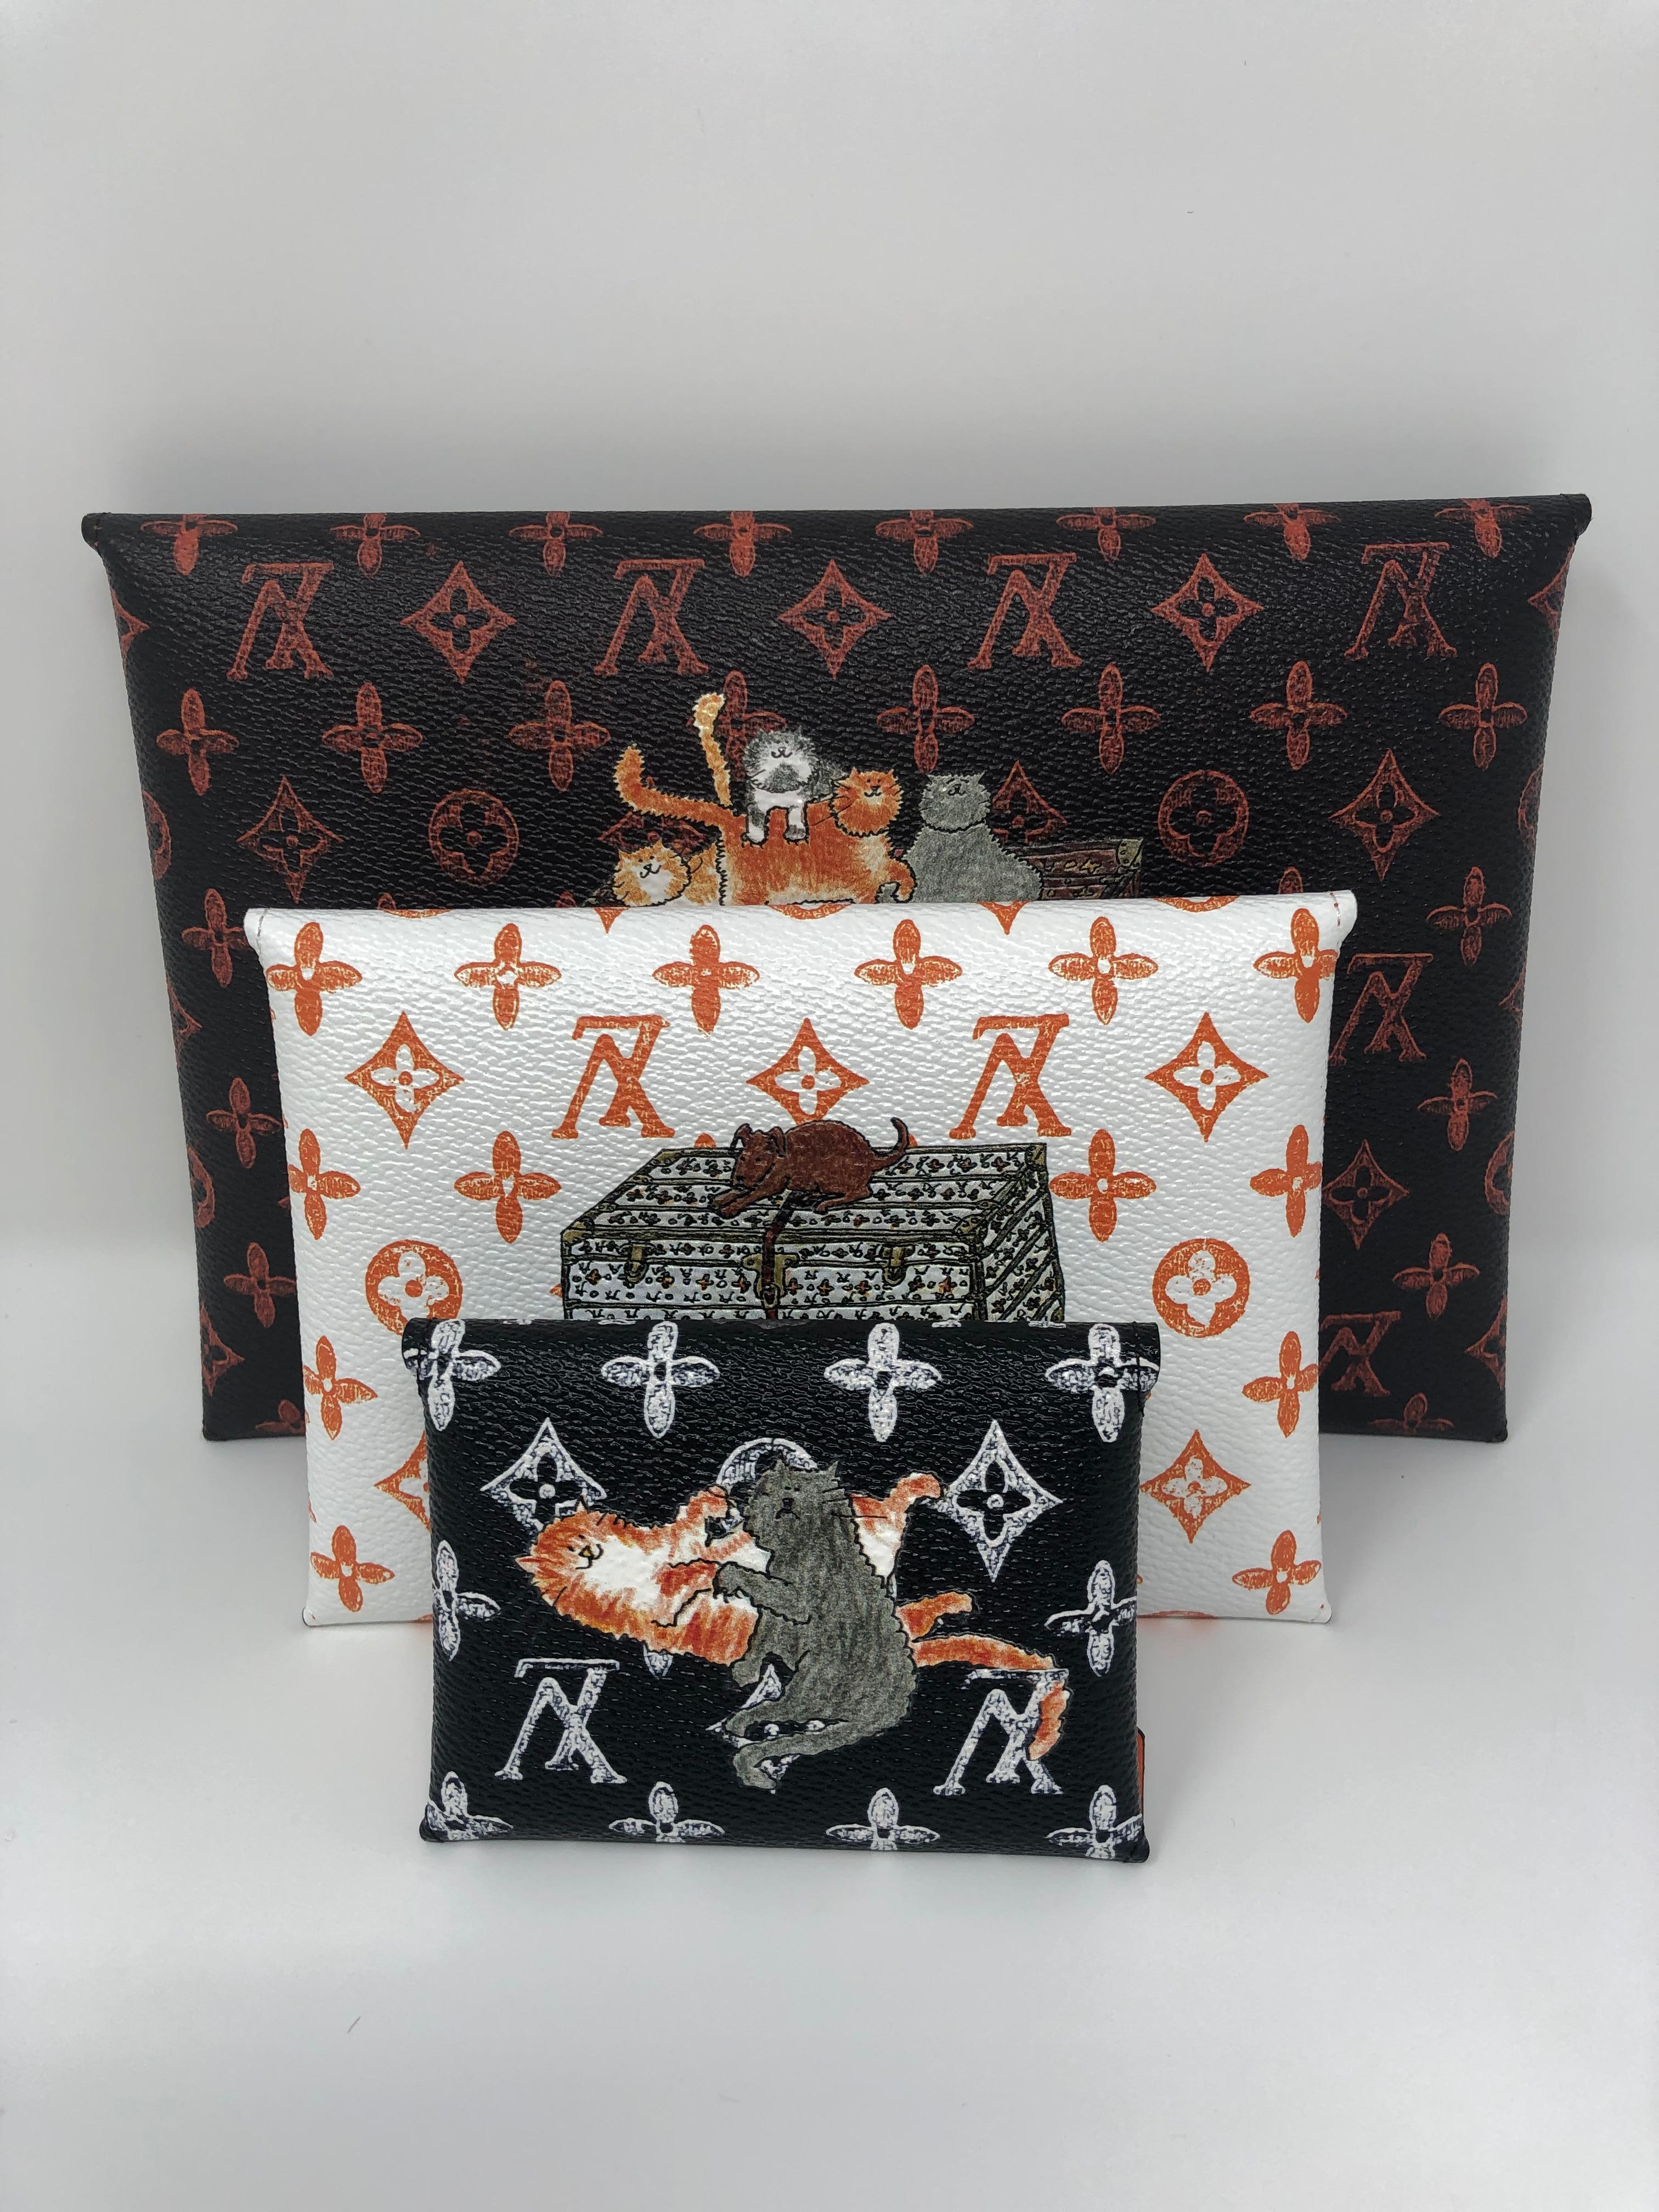 Louis Vuitton Catogramme de Grace Coddington Set Kirigami. Cet ensemble de kirigami se compose de trois pochettes de taille différente. Tout nouveau et très limité. Pièce de collection rare. Comprend l'ensemble de la série originale avec la